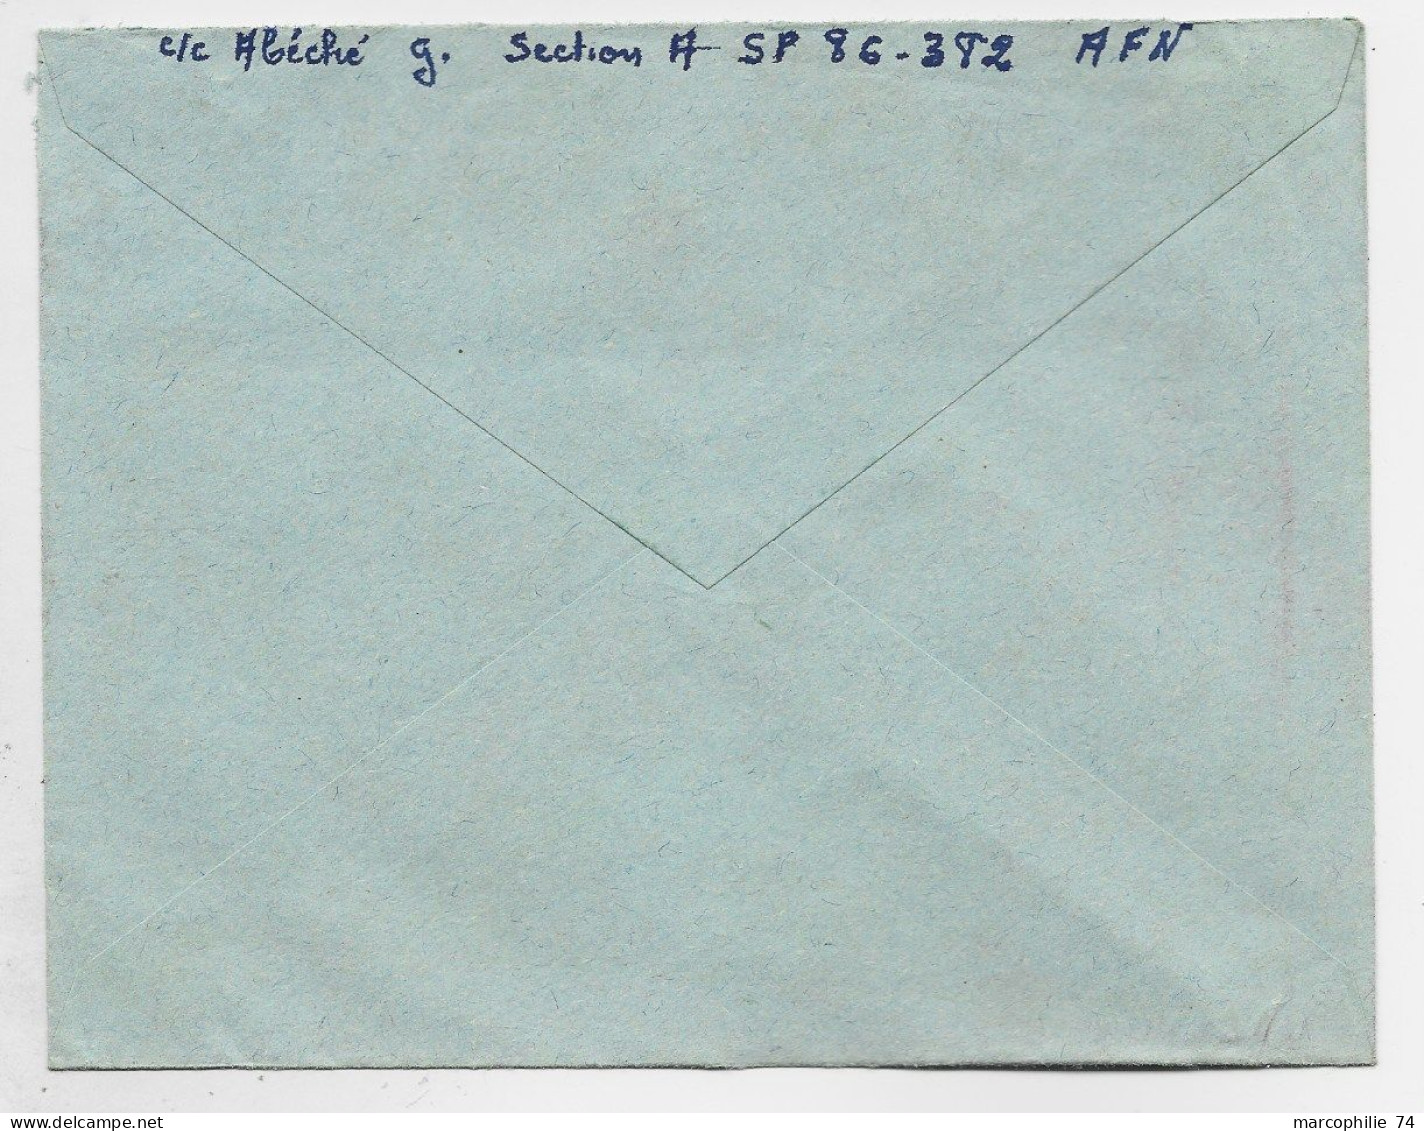 FM ROUGE LETTRE AVION MEC SECAP POSTE AUX ARMEES 9.10.1956 A.F.N. GUERRE ALGERIE - Military Postage Stamps